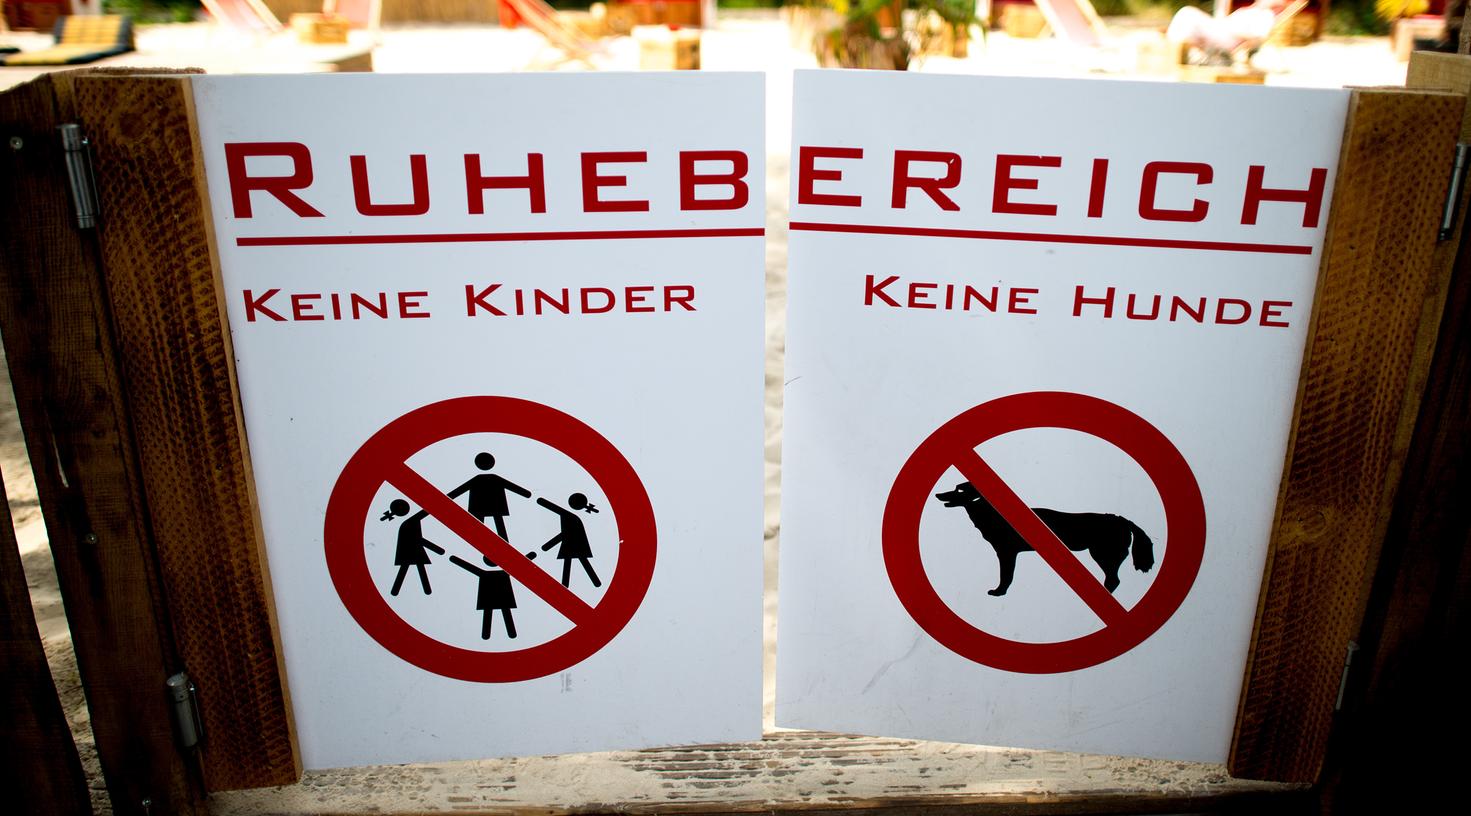 Kinder und Hunde müssen draußenbleiben: Diese kinderfreie Zone in Düsseldorf erzürnt derzeit Mütter.